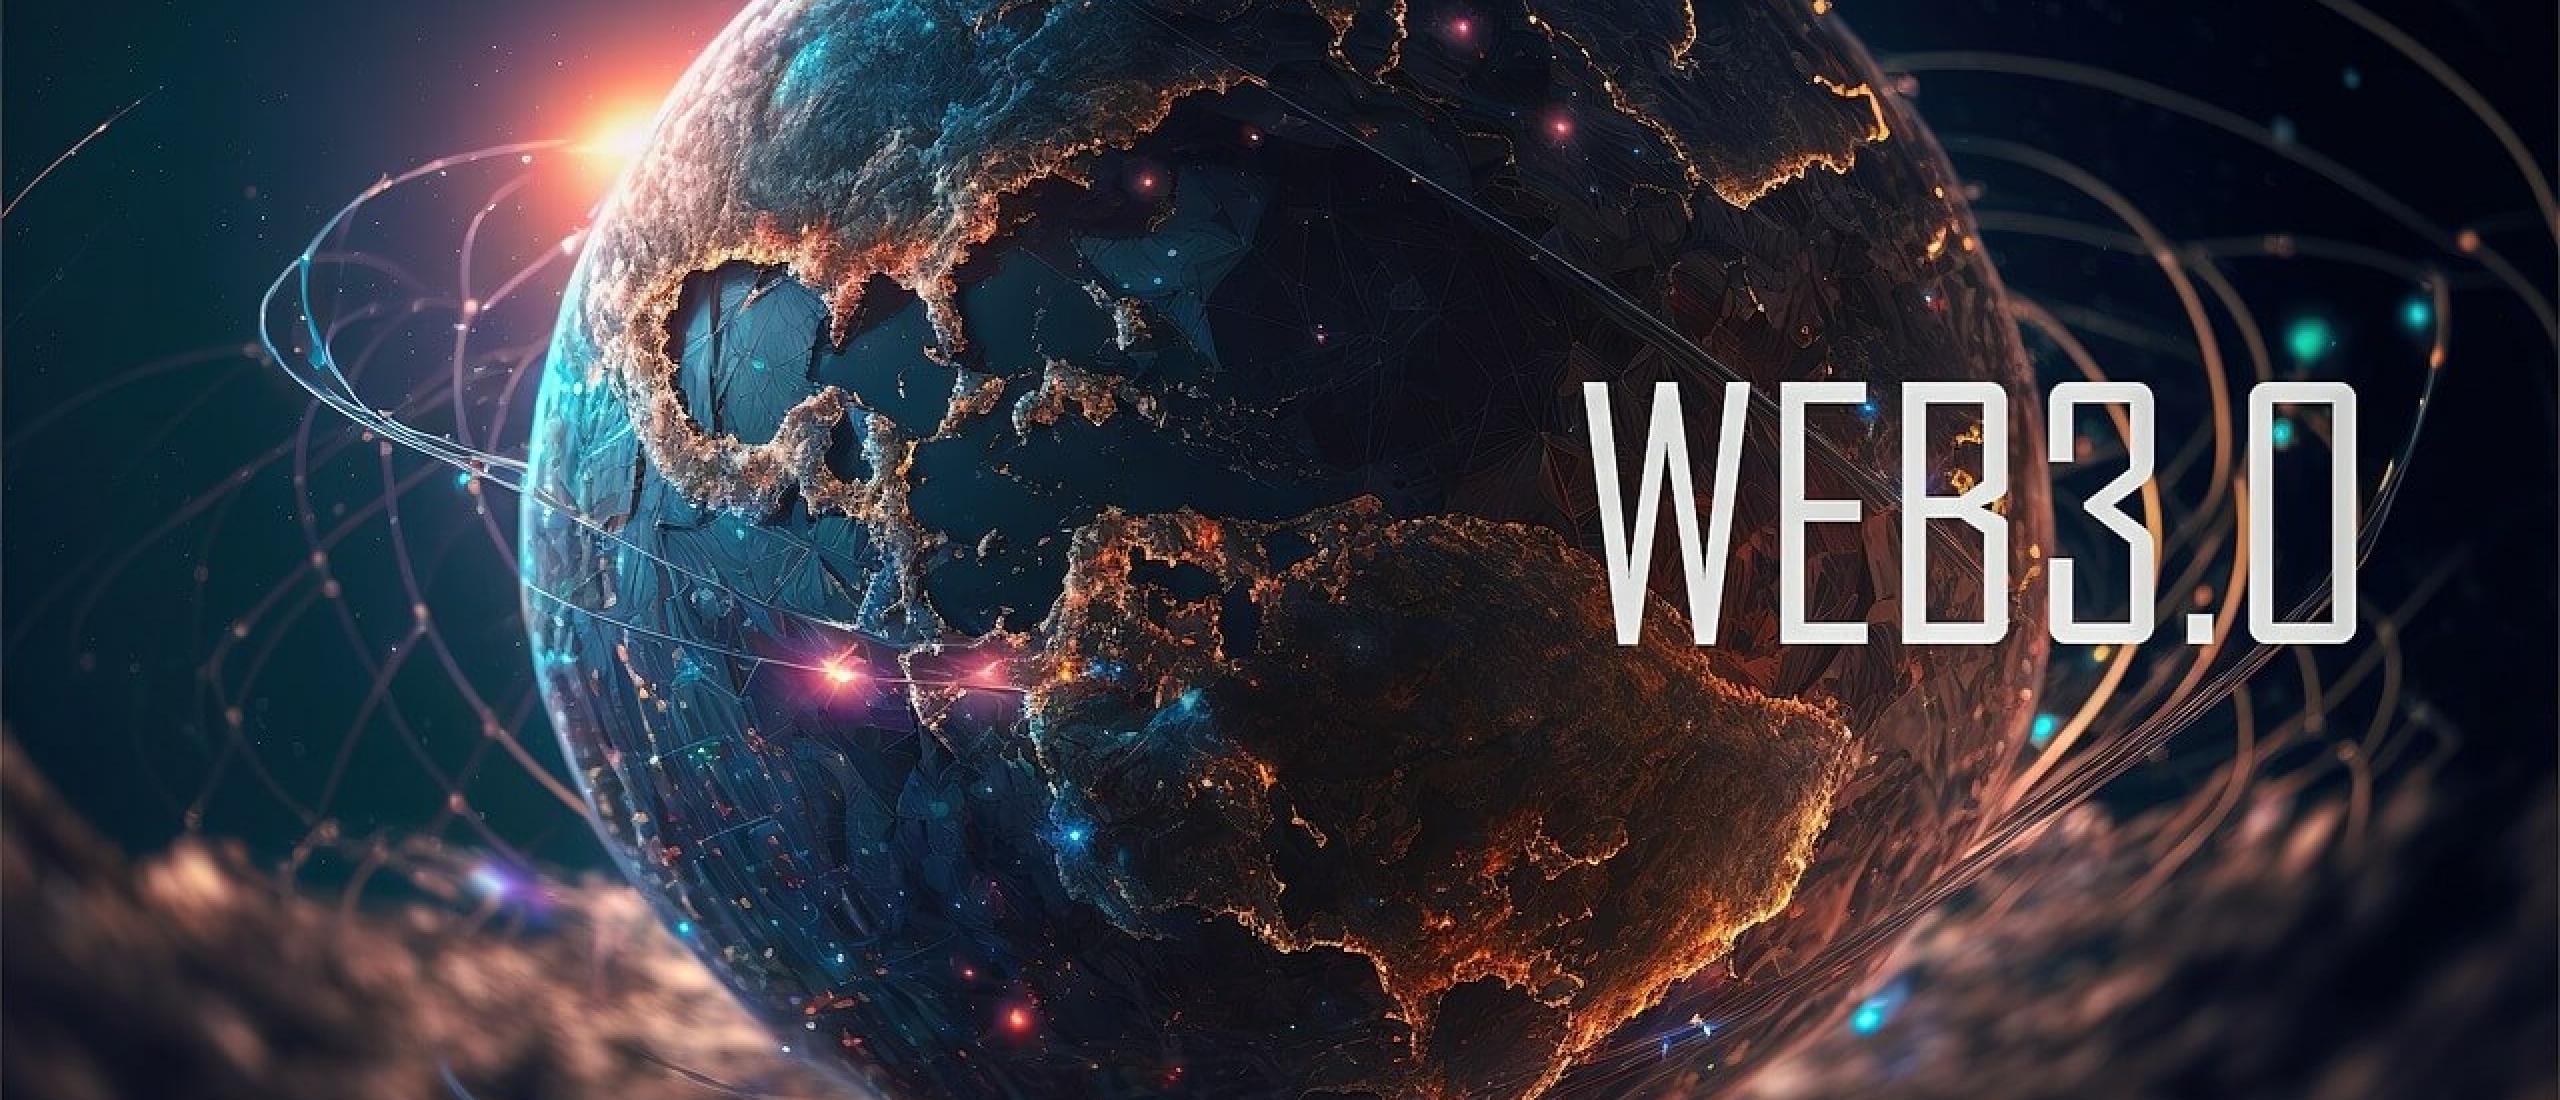 Wat is Web 3.0? Ontdek derde generatie internet!